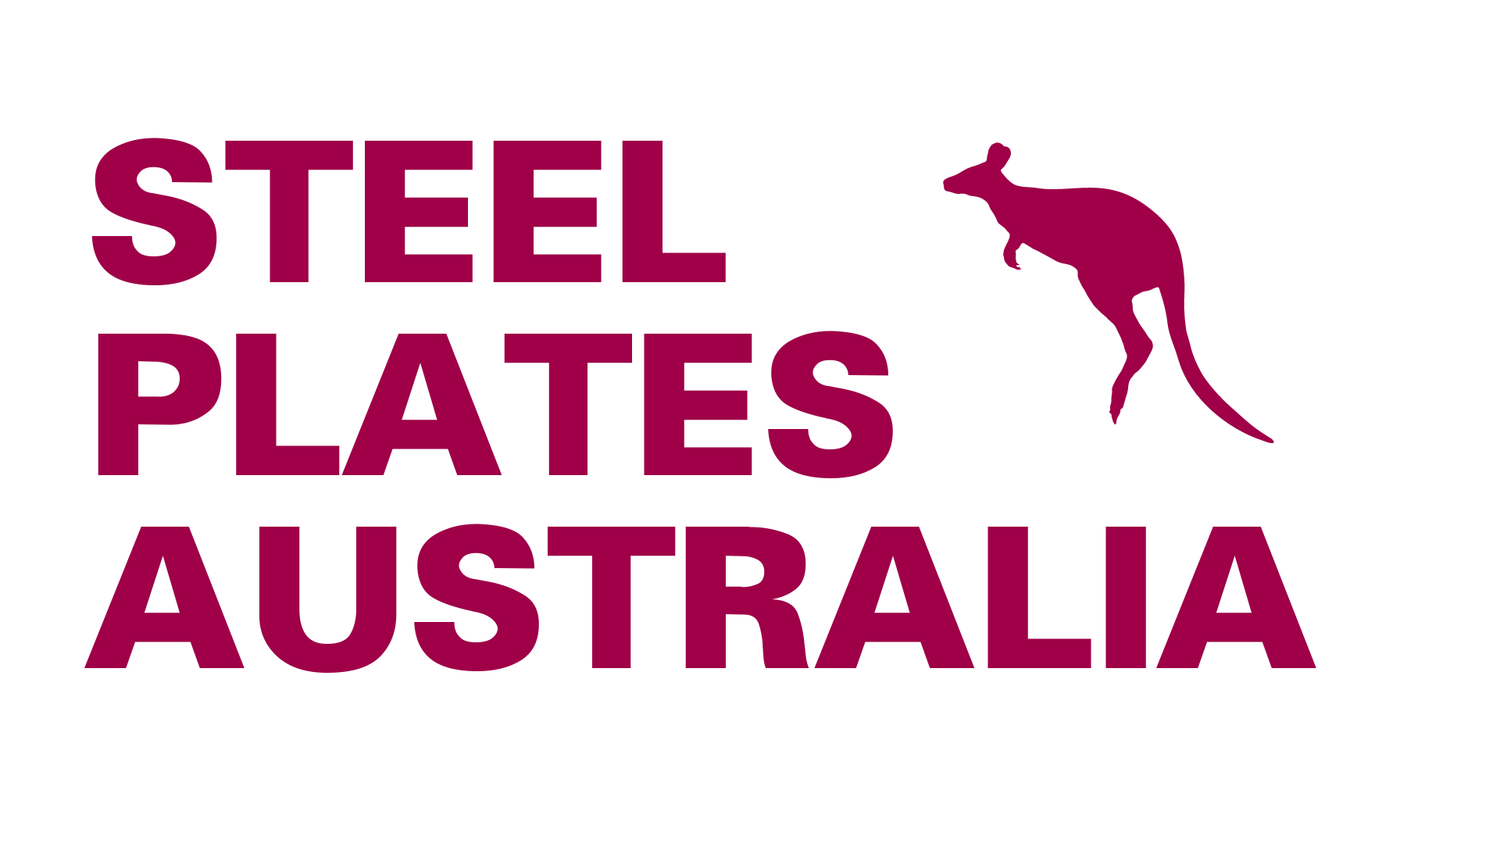 Steel Plates Australia